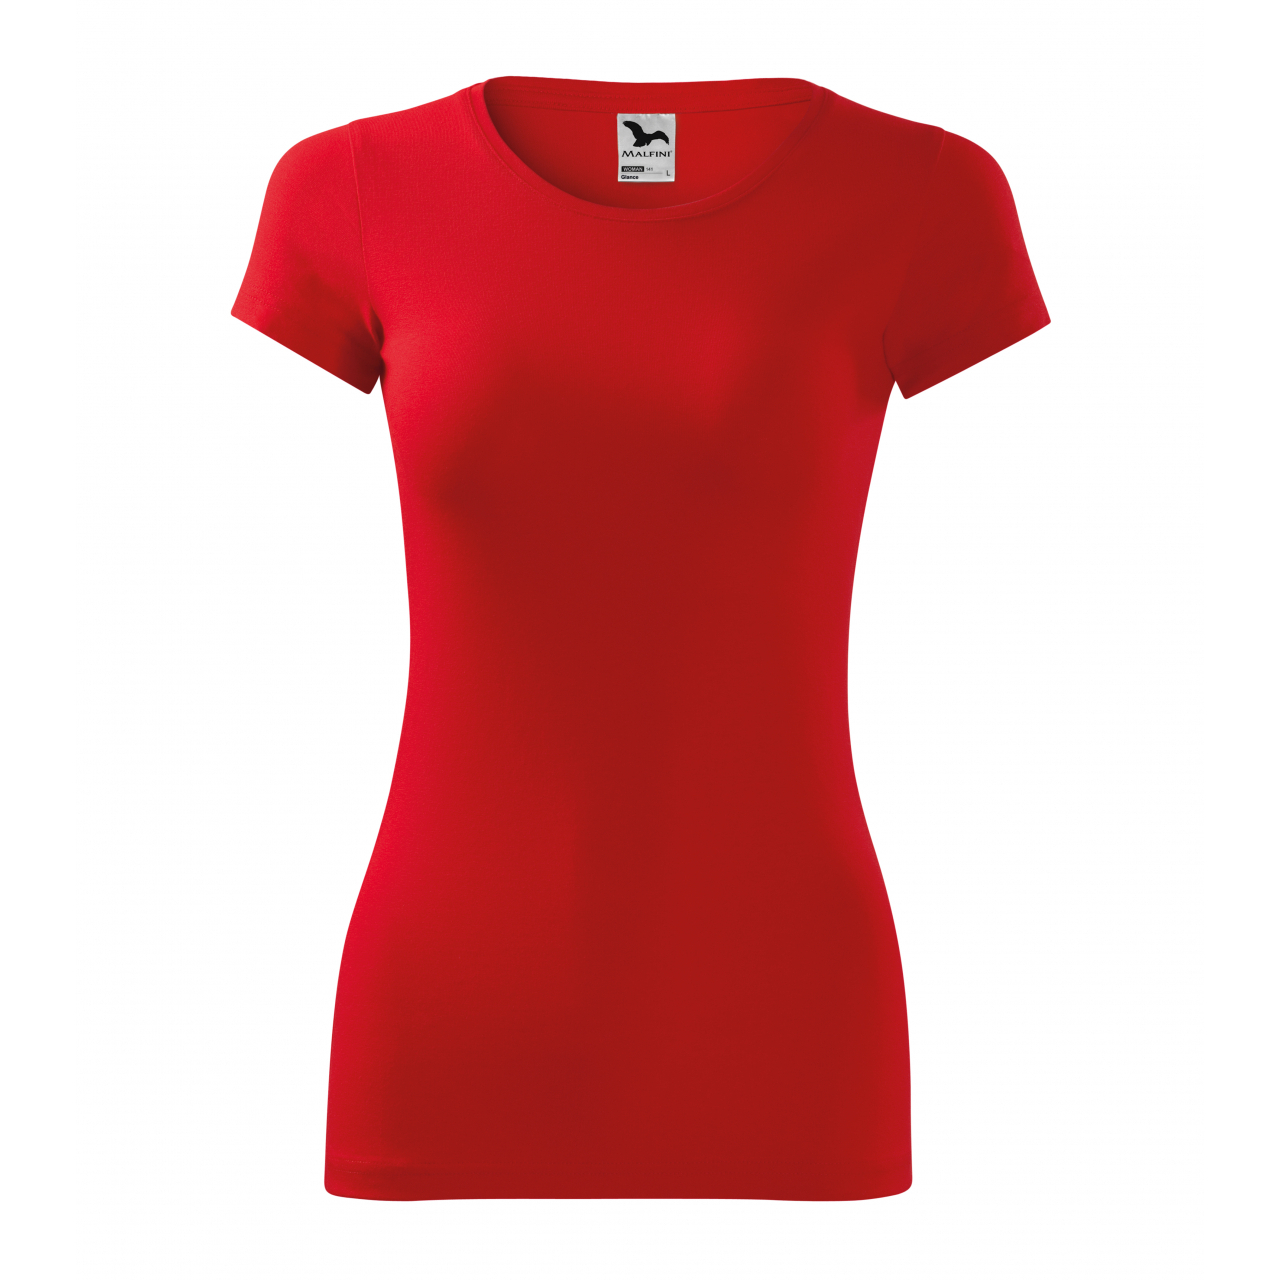 Triko dámské Malfini Glance - červené, XL